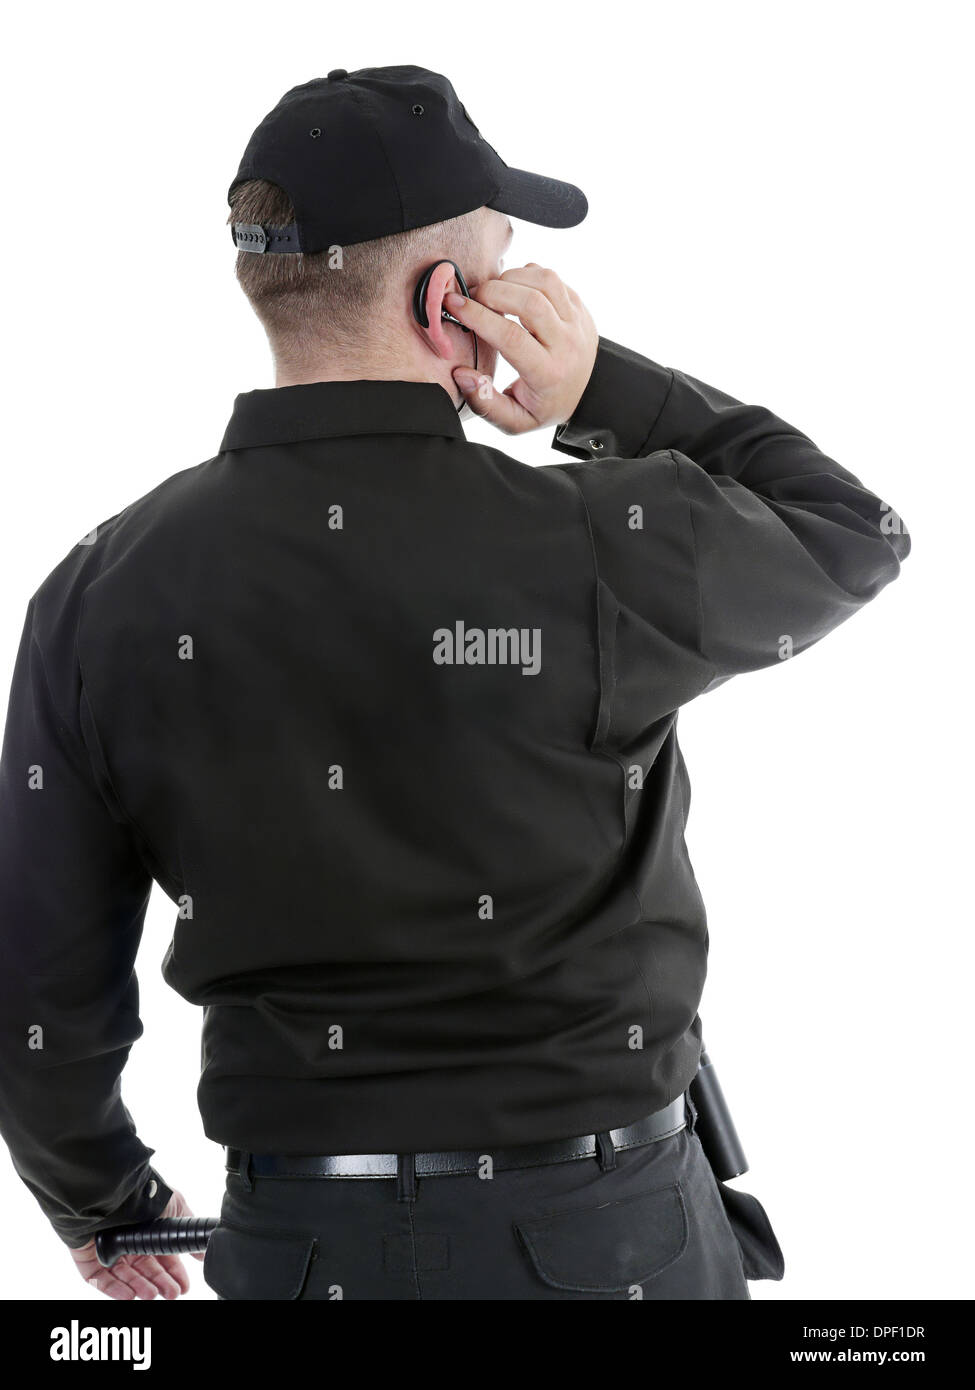 Hombre de seguridad vistiendo uniforme negro se comunican mediante auriculares Foto de stock